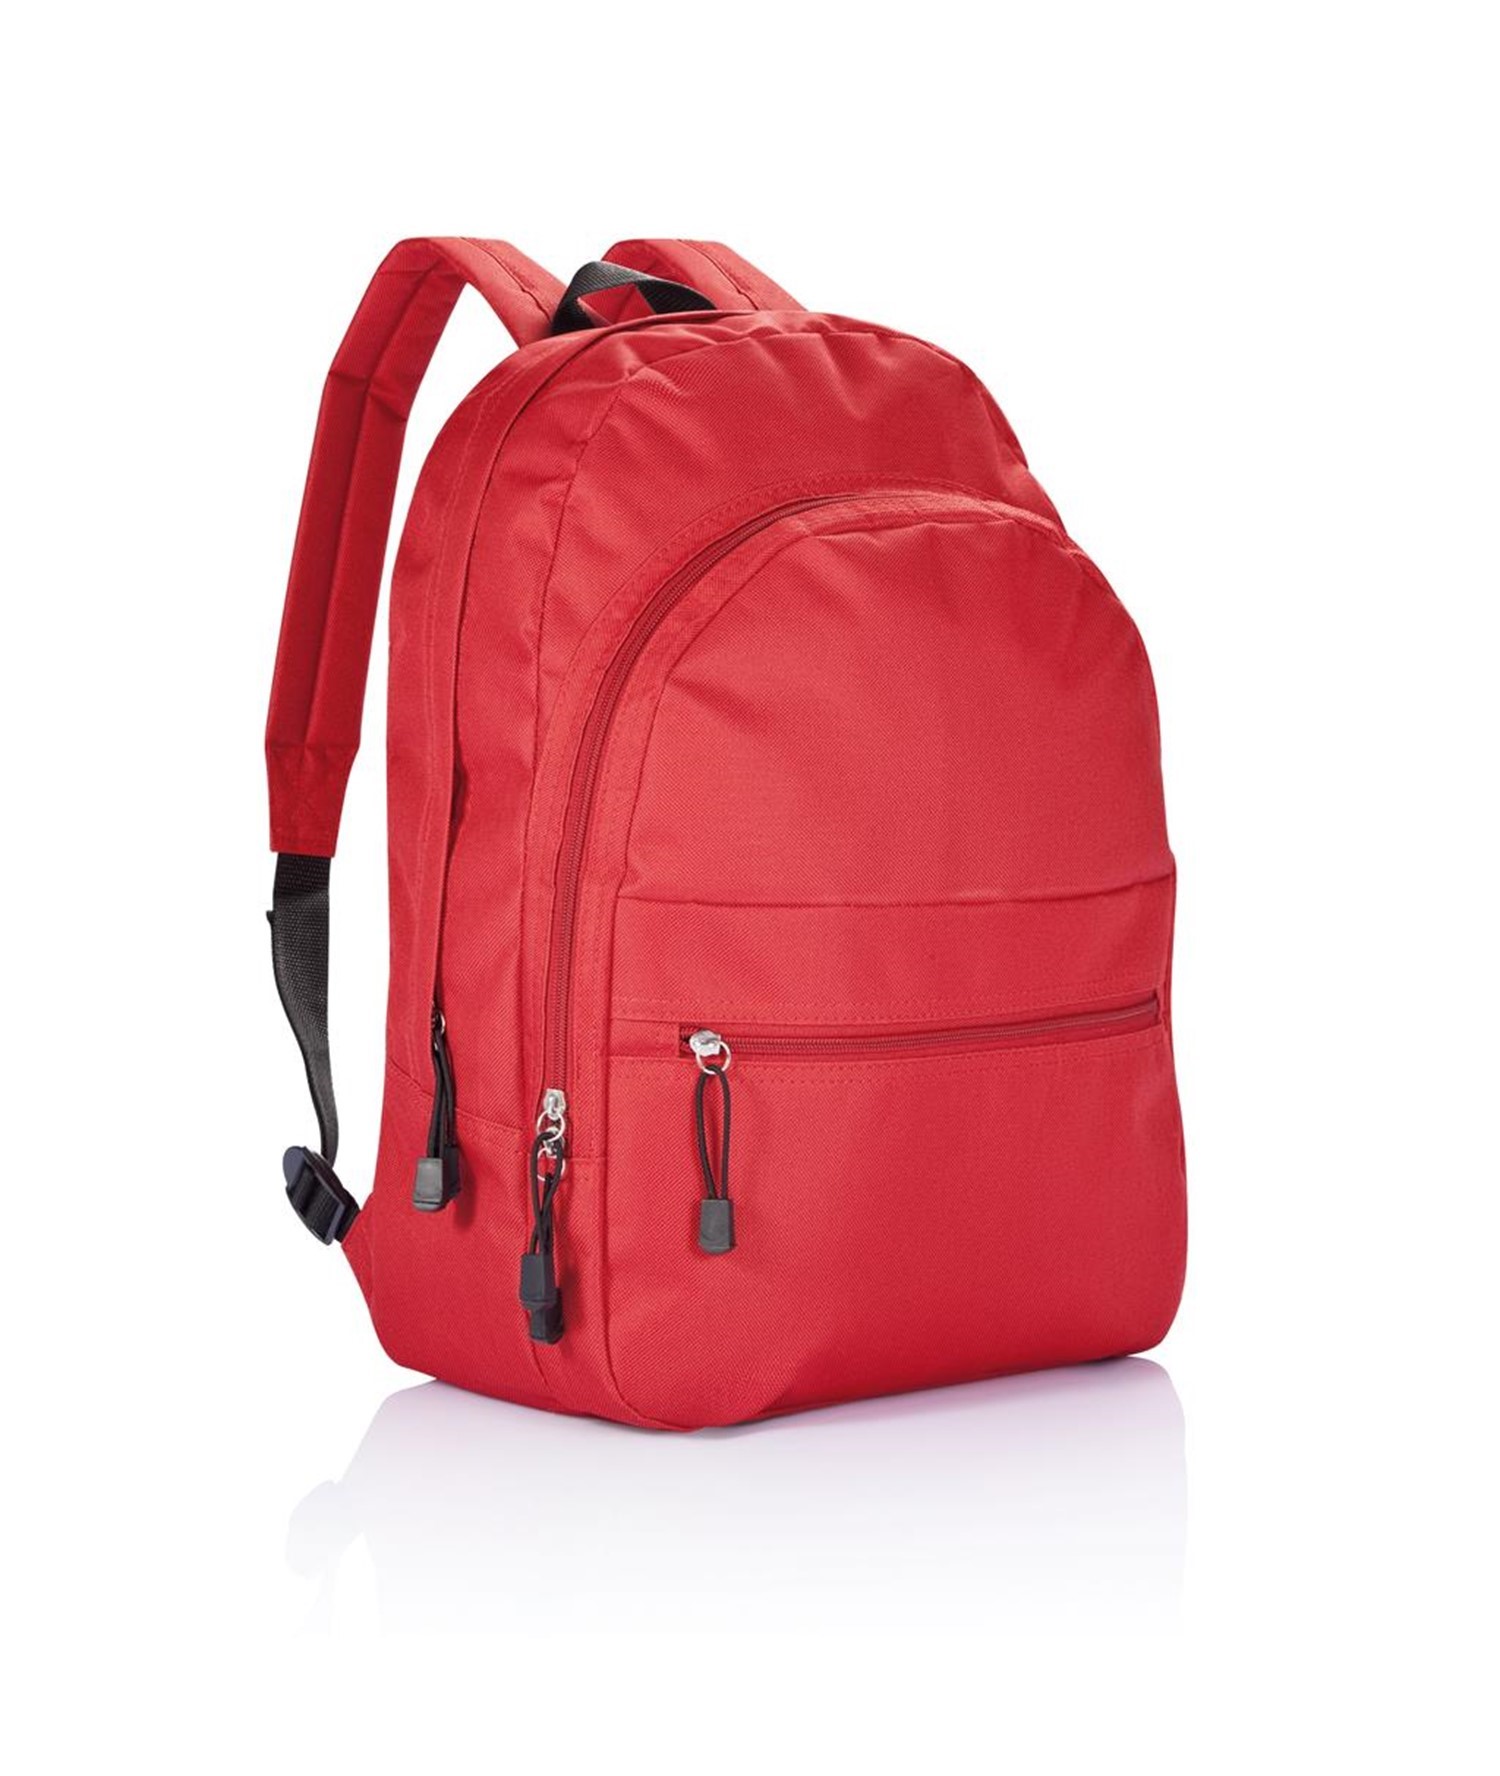 Купить рюкзак будет. Рюкзак Luxman красный. Рюкзак IGS красный. Рюкзак спортивный Kari a50615-3. Рюкзак Валтек.